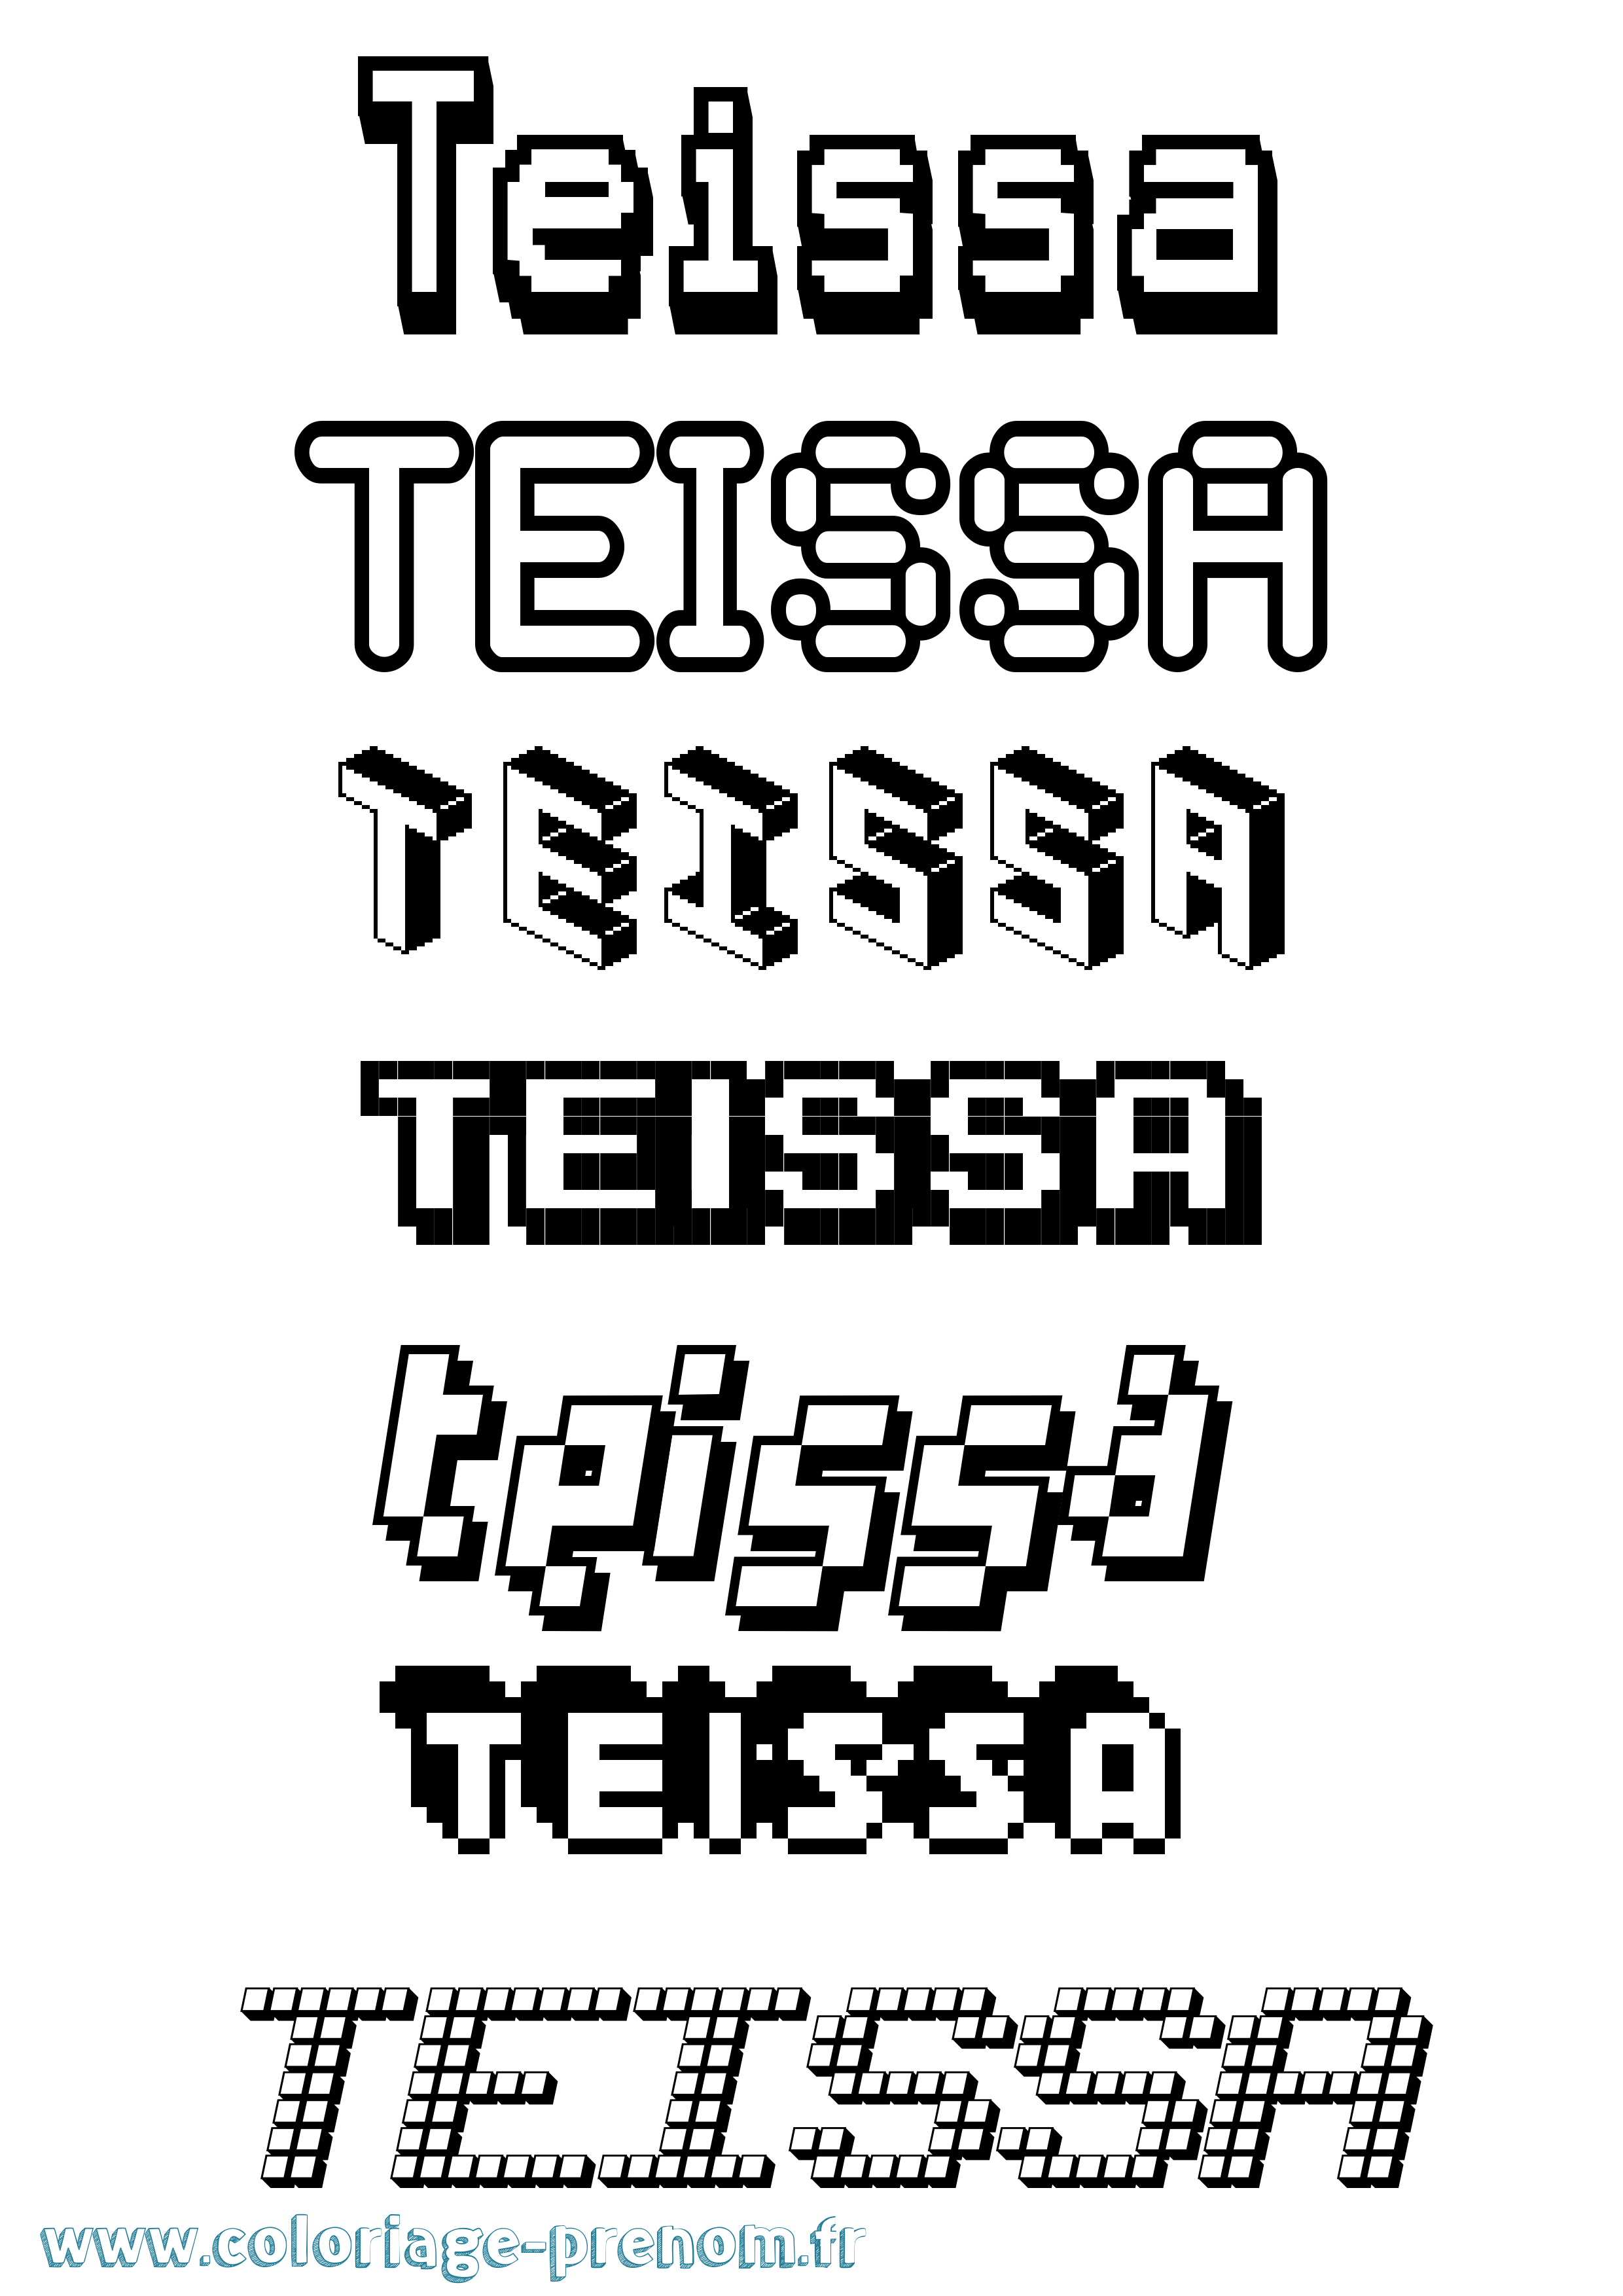 Coloriage prénom Teissa Pixel